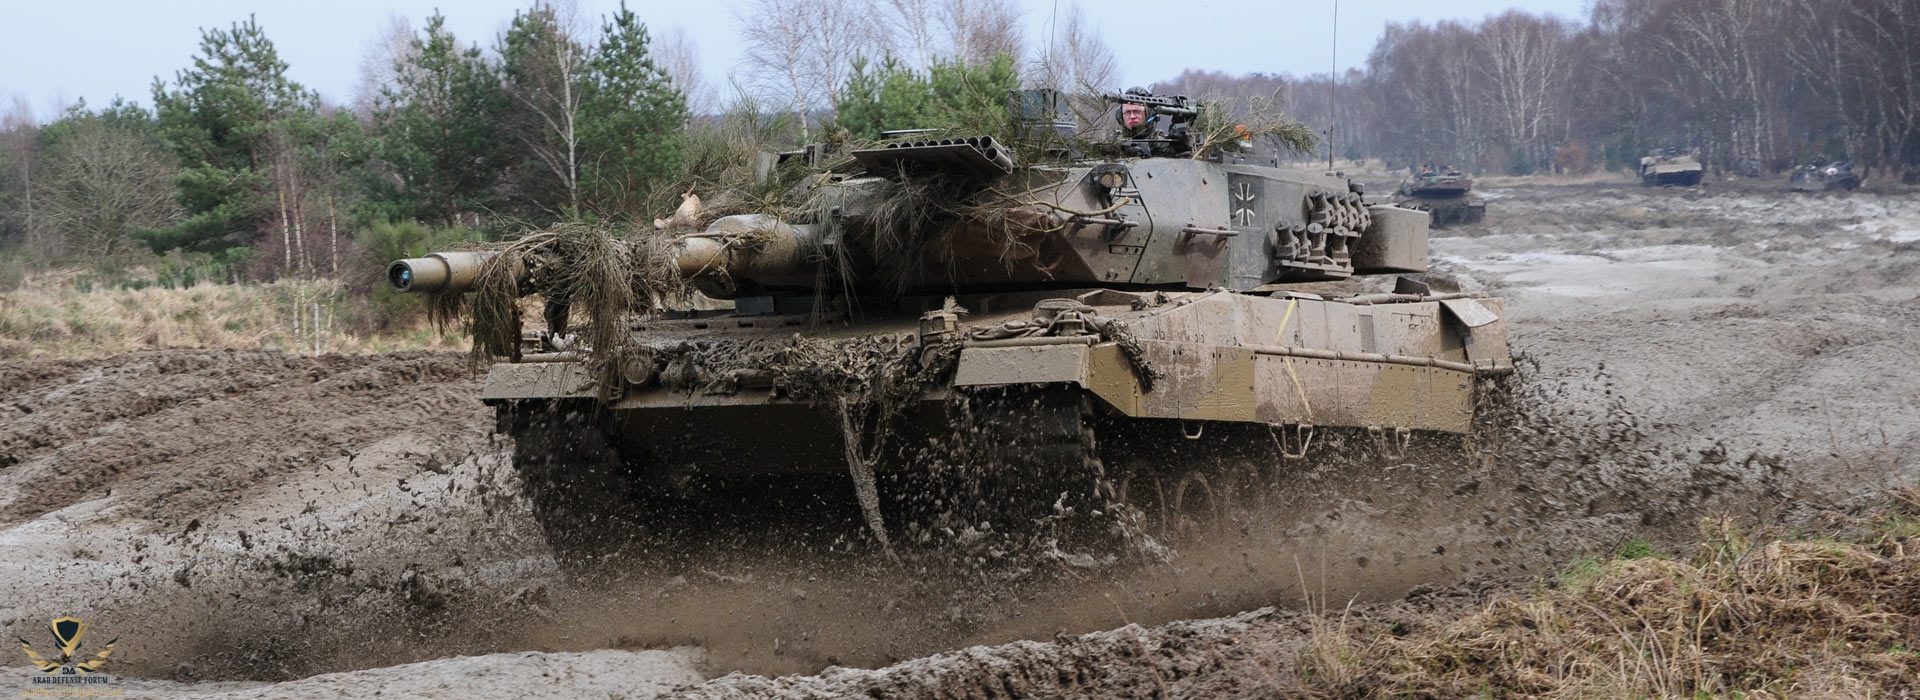 Leopard-2-A6-KMW-003.jpg